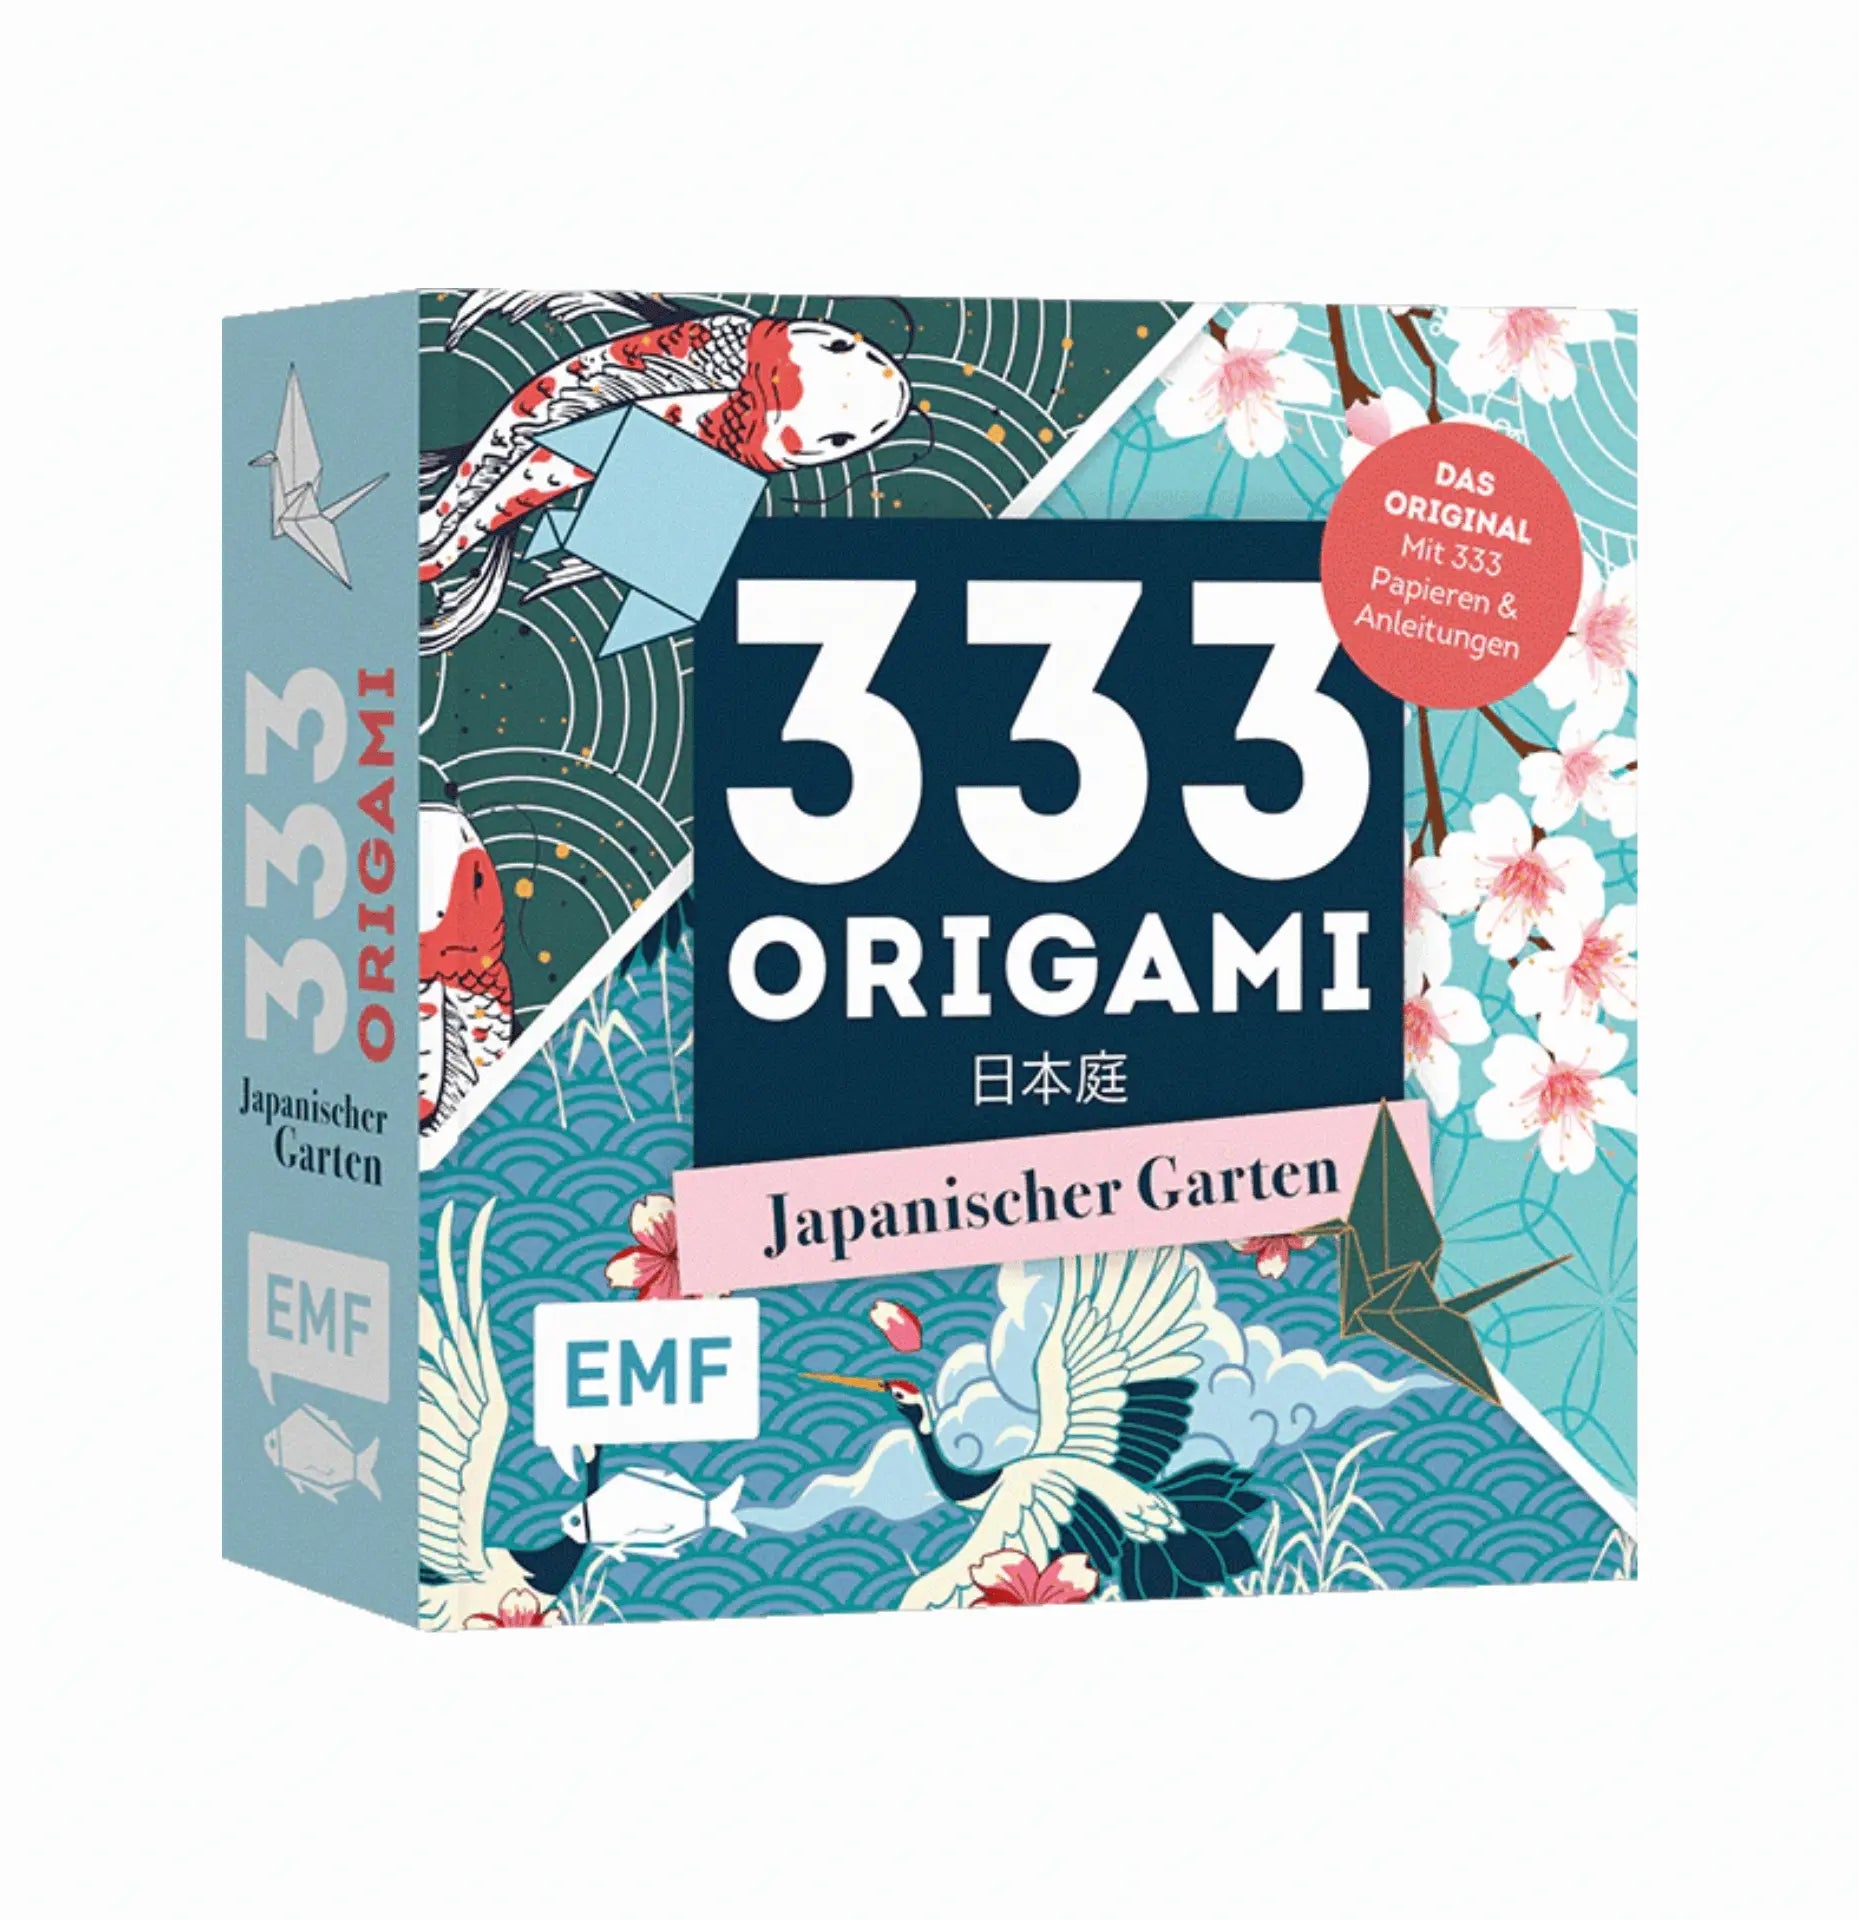 333 Origami - Japanischer Garten EMF Verlag